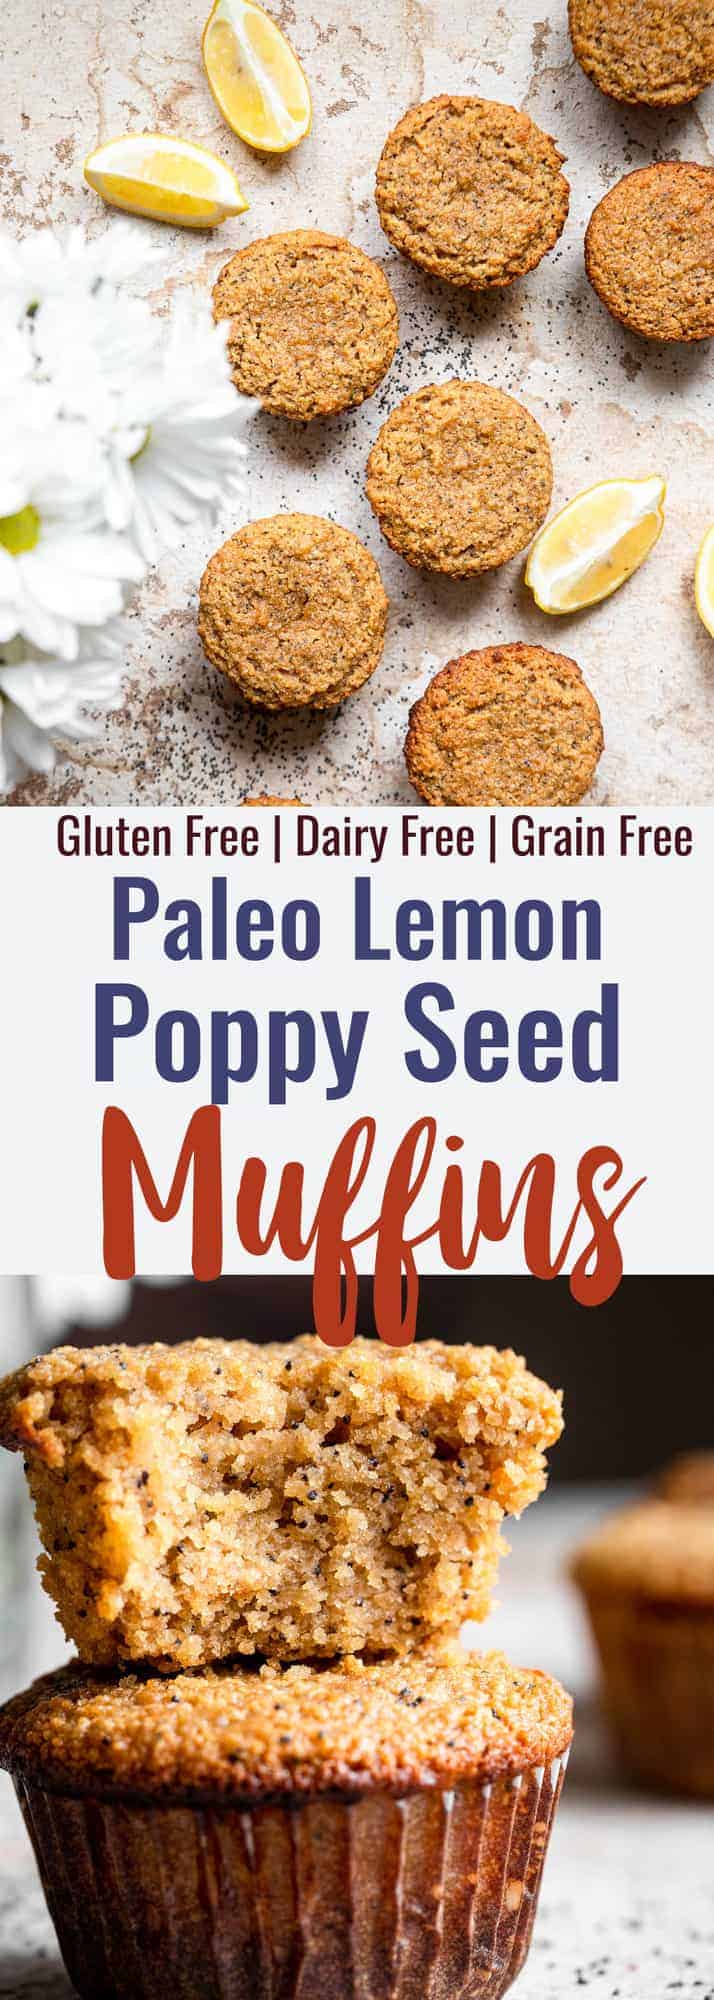 Paleo Lemon Poppy Seed Muffins